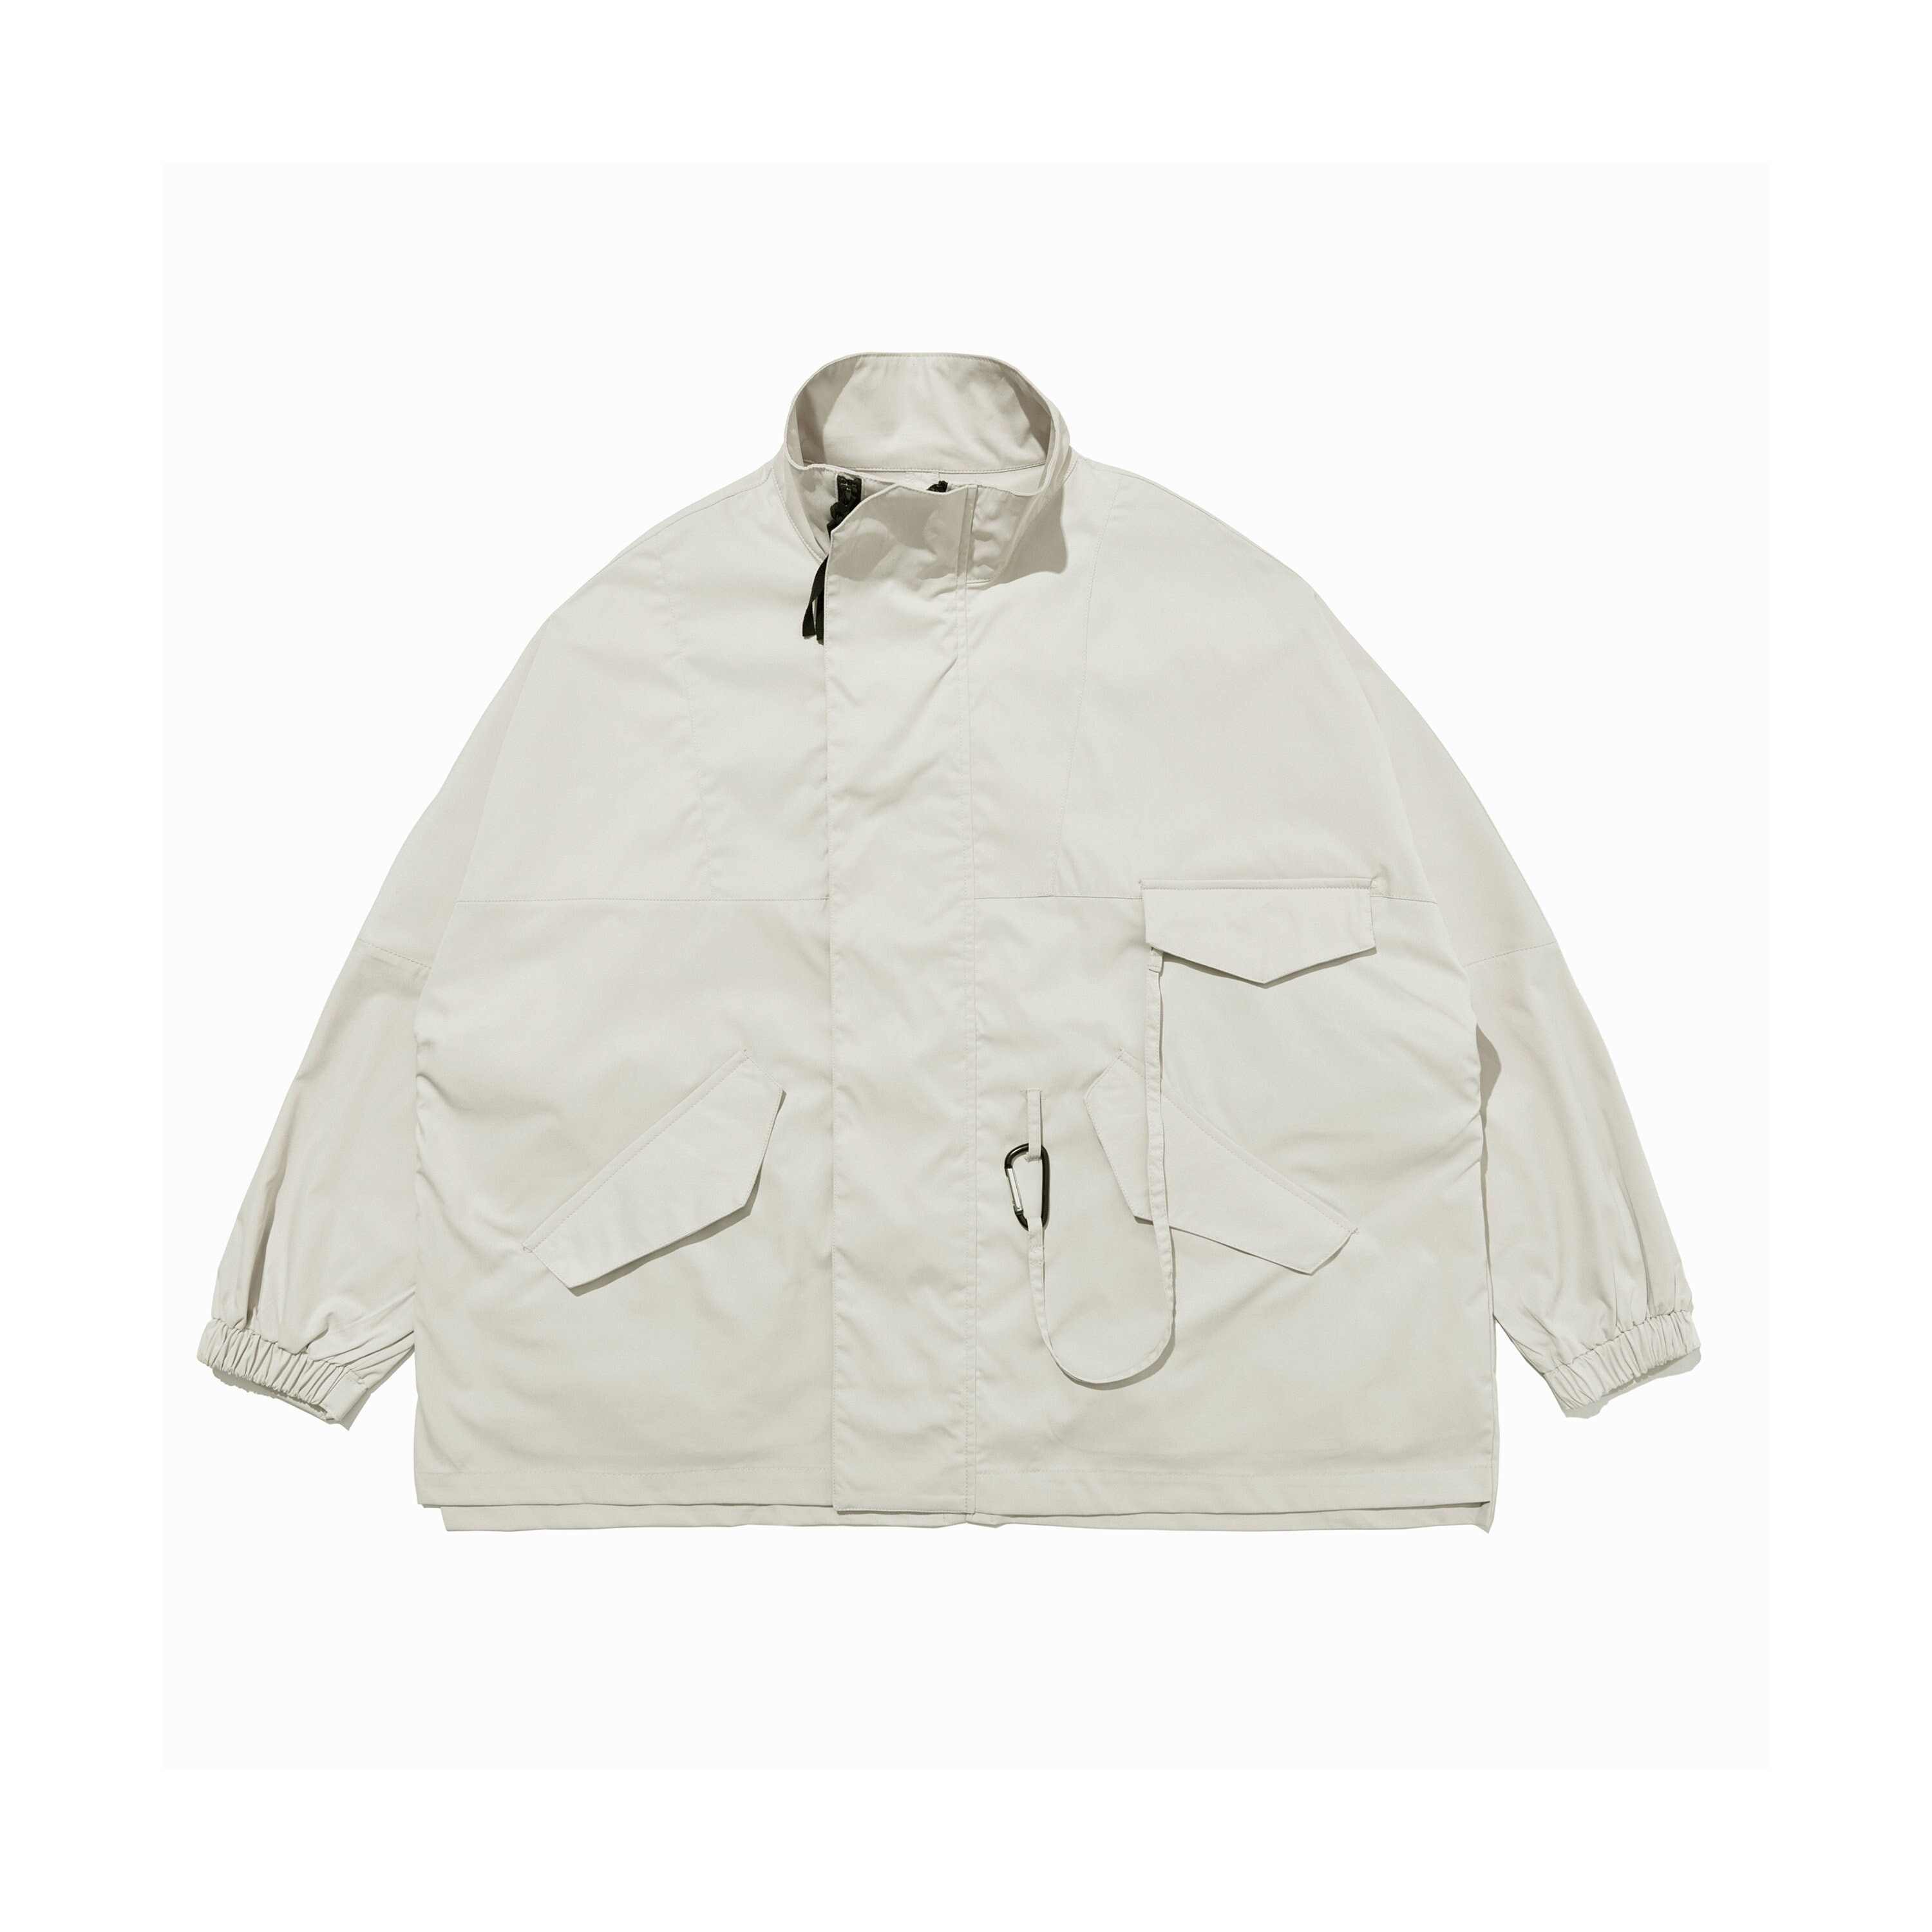 Men's Streetwear Fashion Cargo Jacket Techwear White Full - Etsy